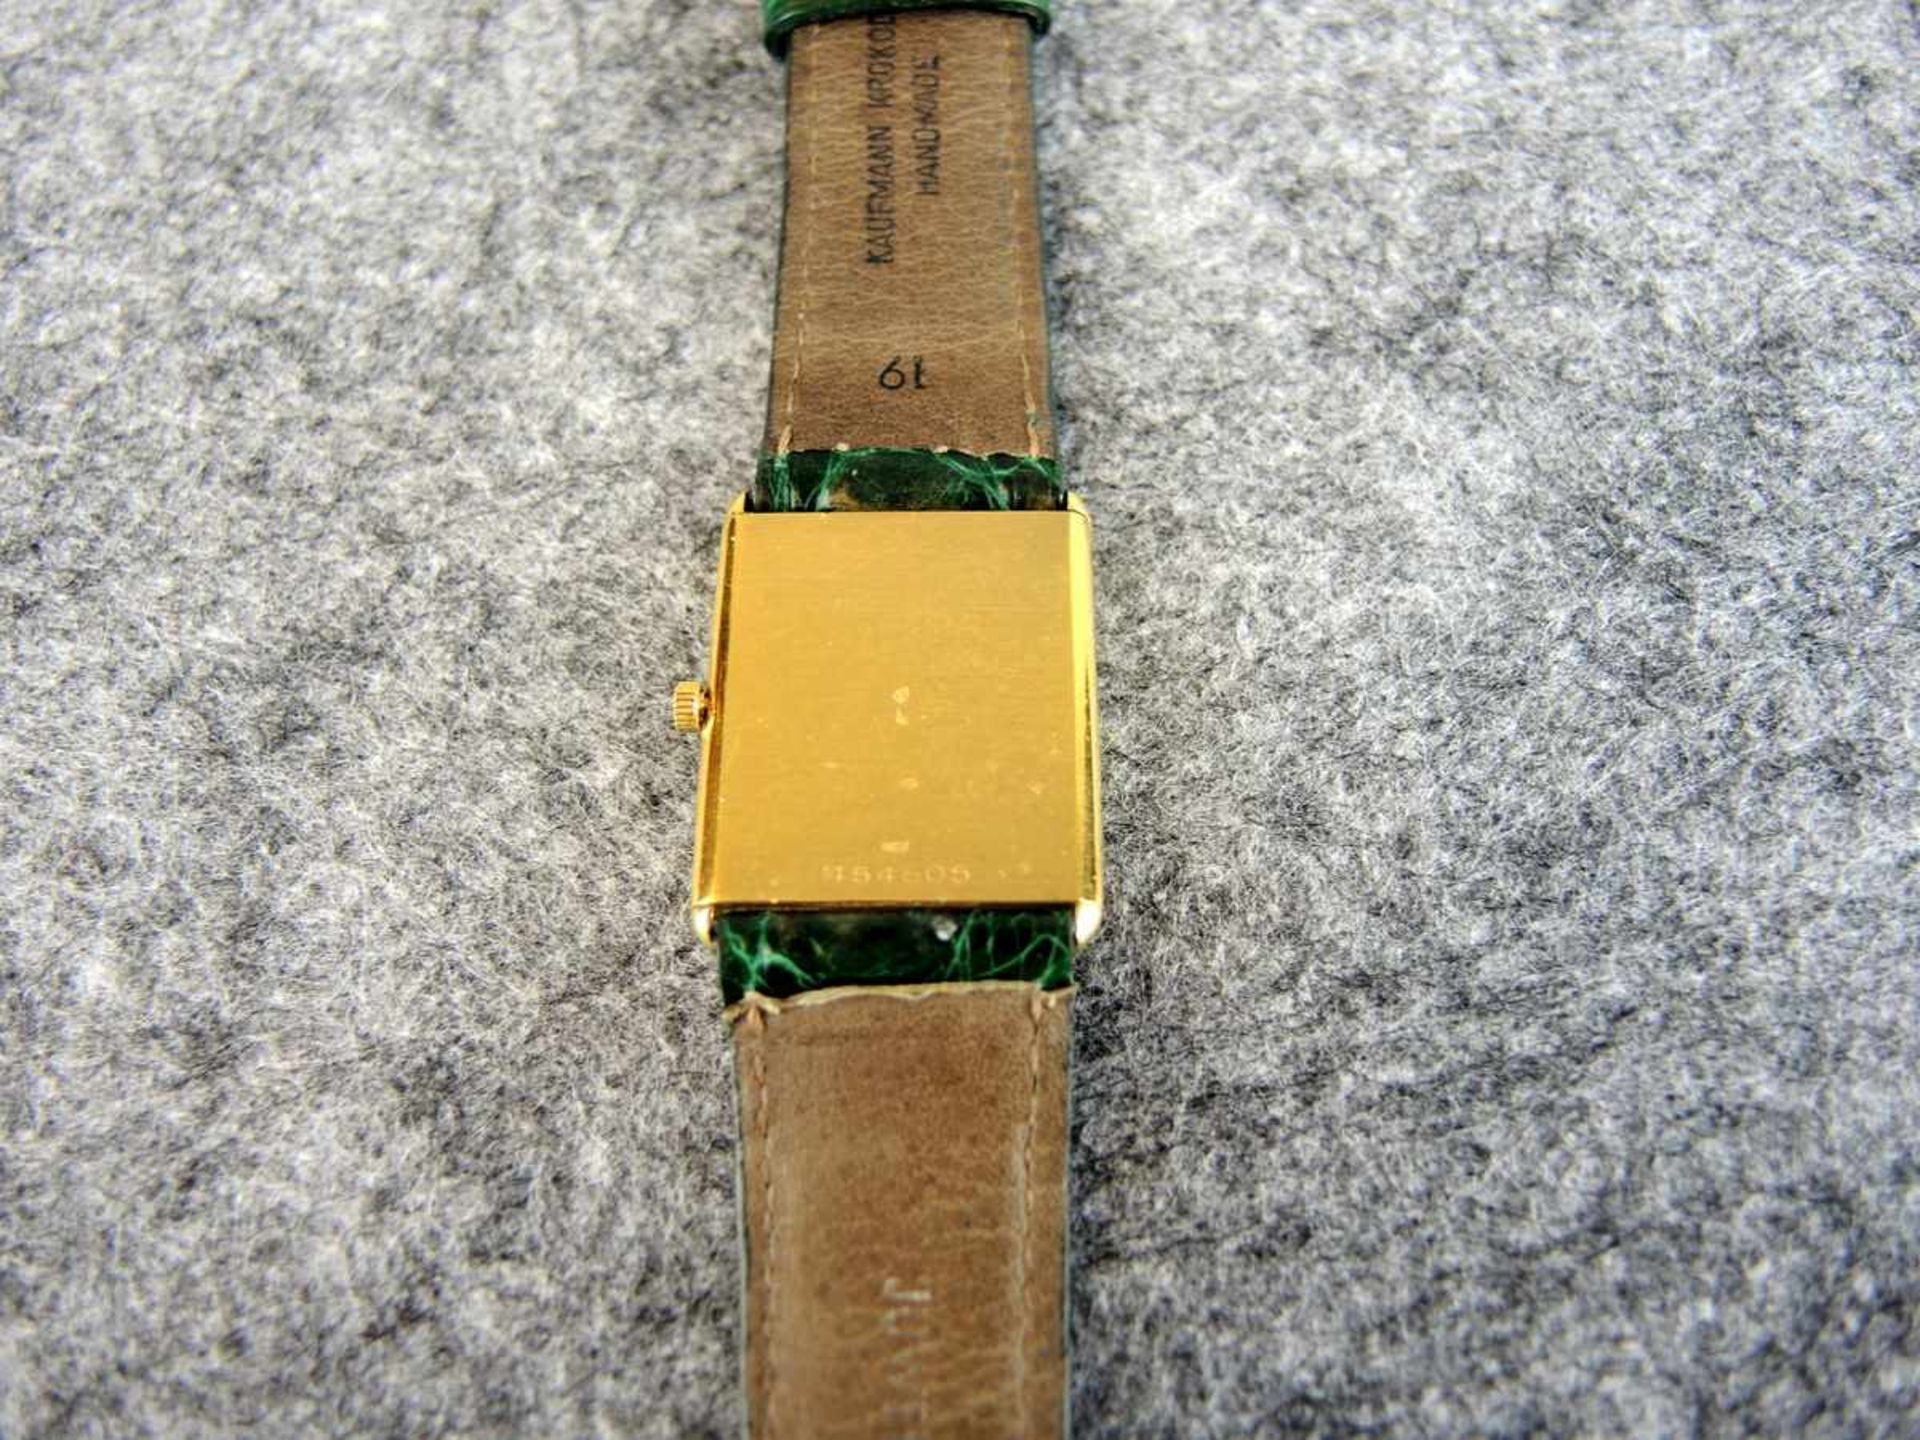 Vacheron & Constantin Armbanduhr 18 K. Gelbgold, mit Handaufzug. Gangbar, lediglich zwischen den - Bild 2 aus 2